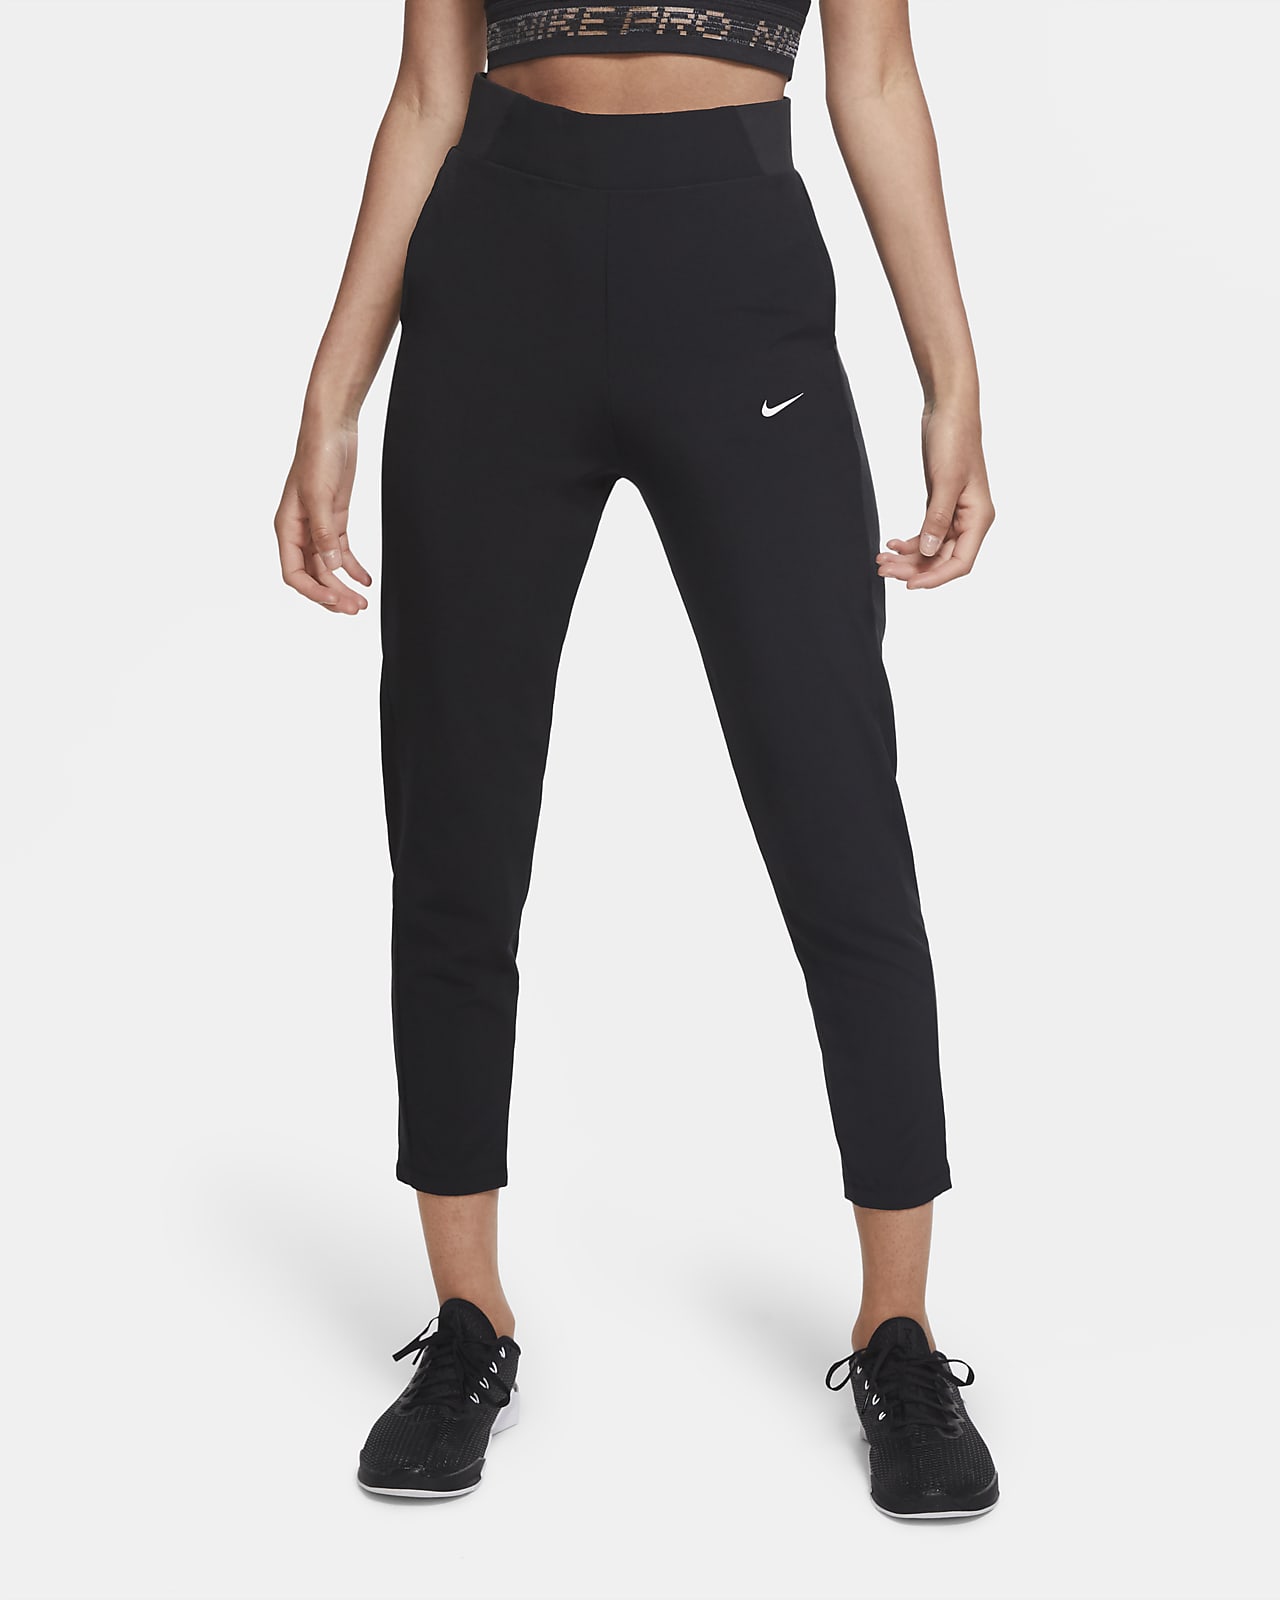 fluctuar Radar rock Nike Dri-FIT Bliss Victory Pantalón de entrenamiento de talle medio - Mujer.  Nike ES